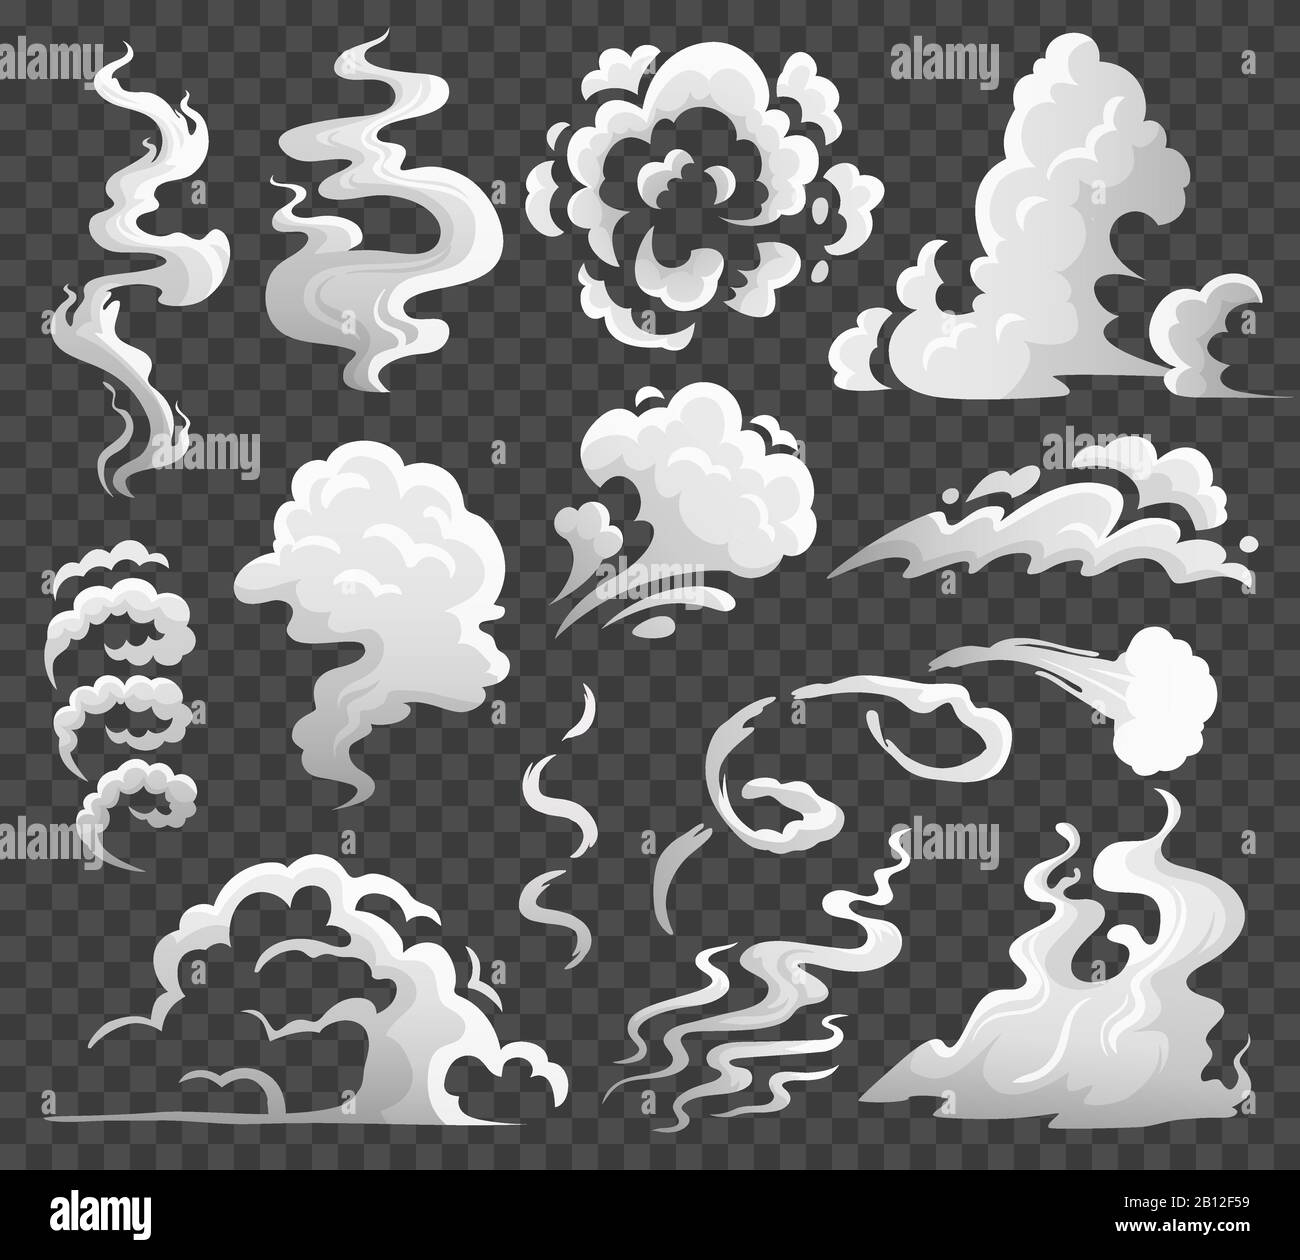 Rauchwolken. Komische Dampfwolke, Rauchwirbel und Dampfströmung. Staubwolken isolierte Cartoon-Vektor-Illustration Stock Vektor